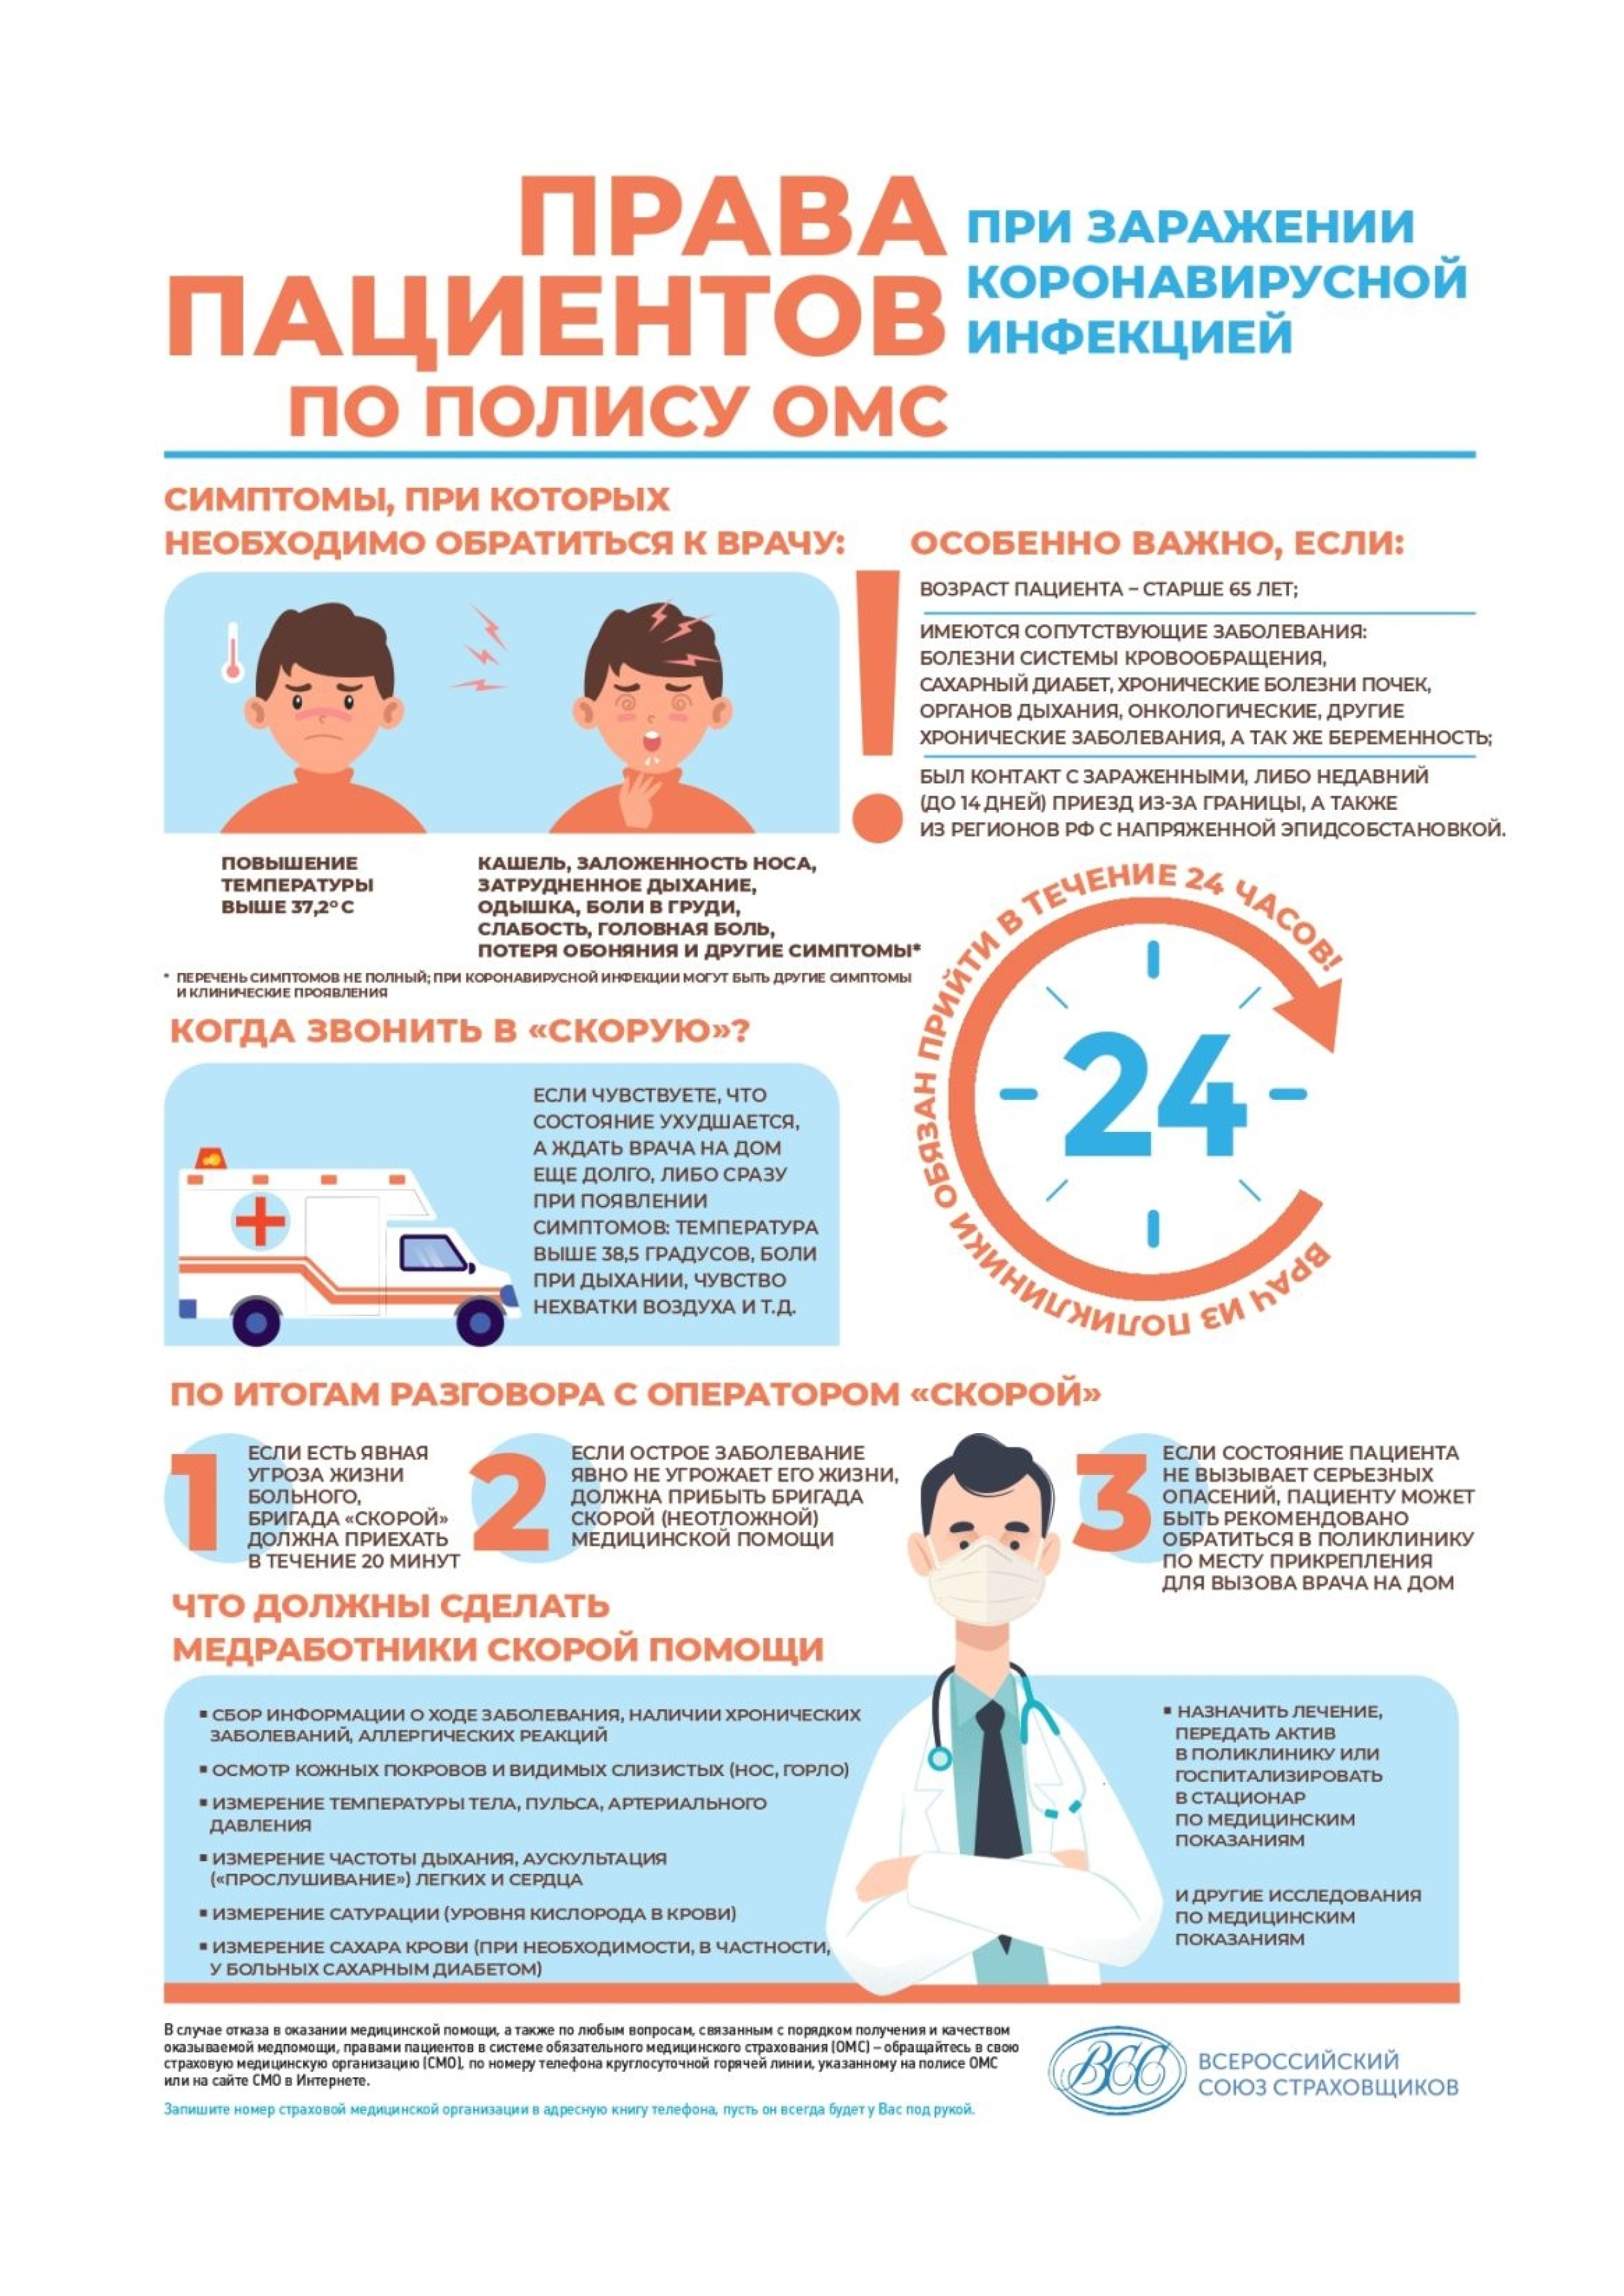   Инфографика «Права пациентов по полису ОМС при заражении коронавирусной инфекцией»